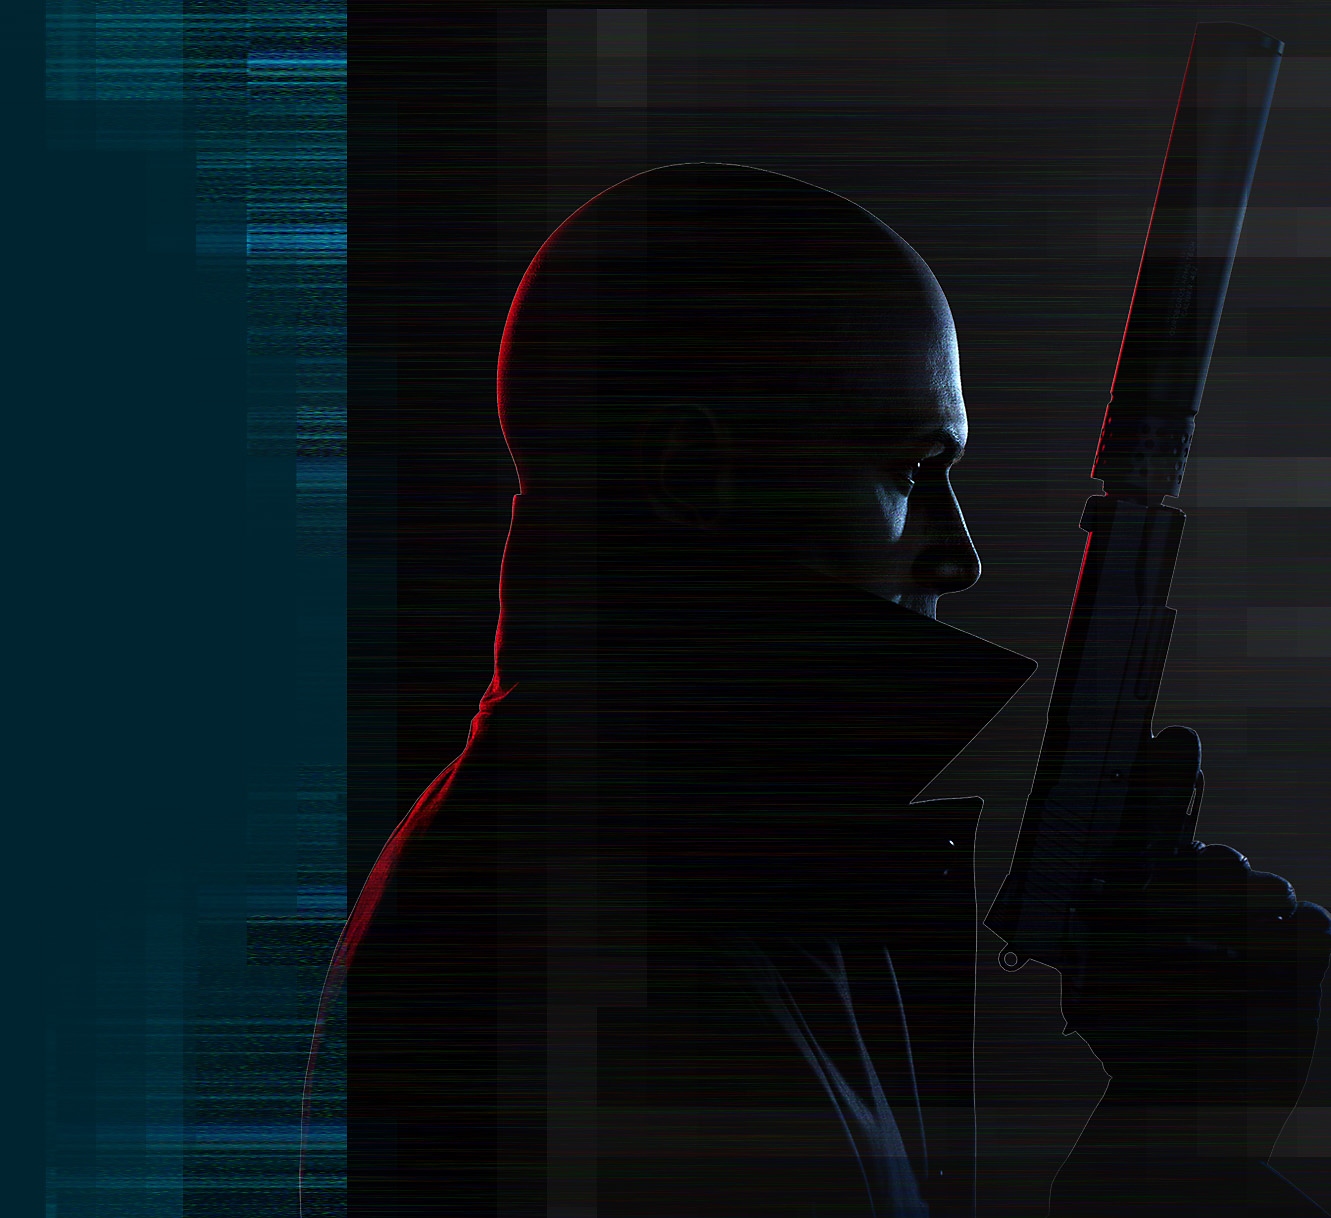 Rendu artistique du personnage 'Agent 47' de Hitman 3 qui tient un pistolet silencieux